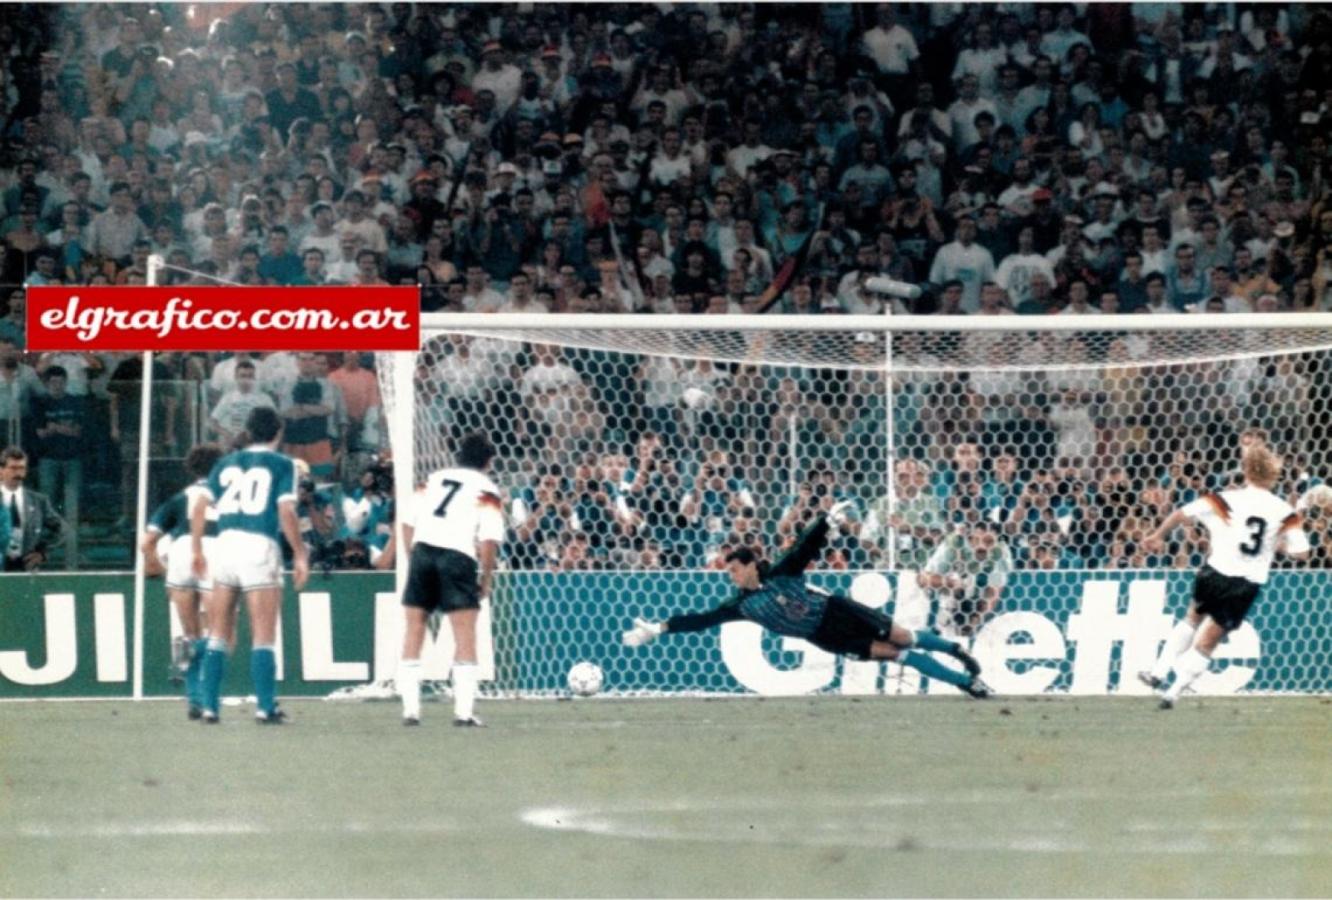 Imagen El penal que convirtió Andreas Brehme tras la polémica infracción que convalidó el árbitro Edgardo Codesal en la final de Italia 1990.